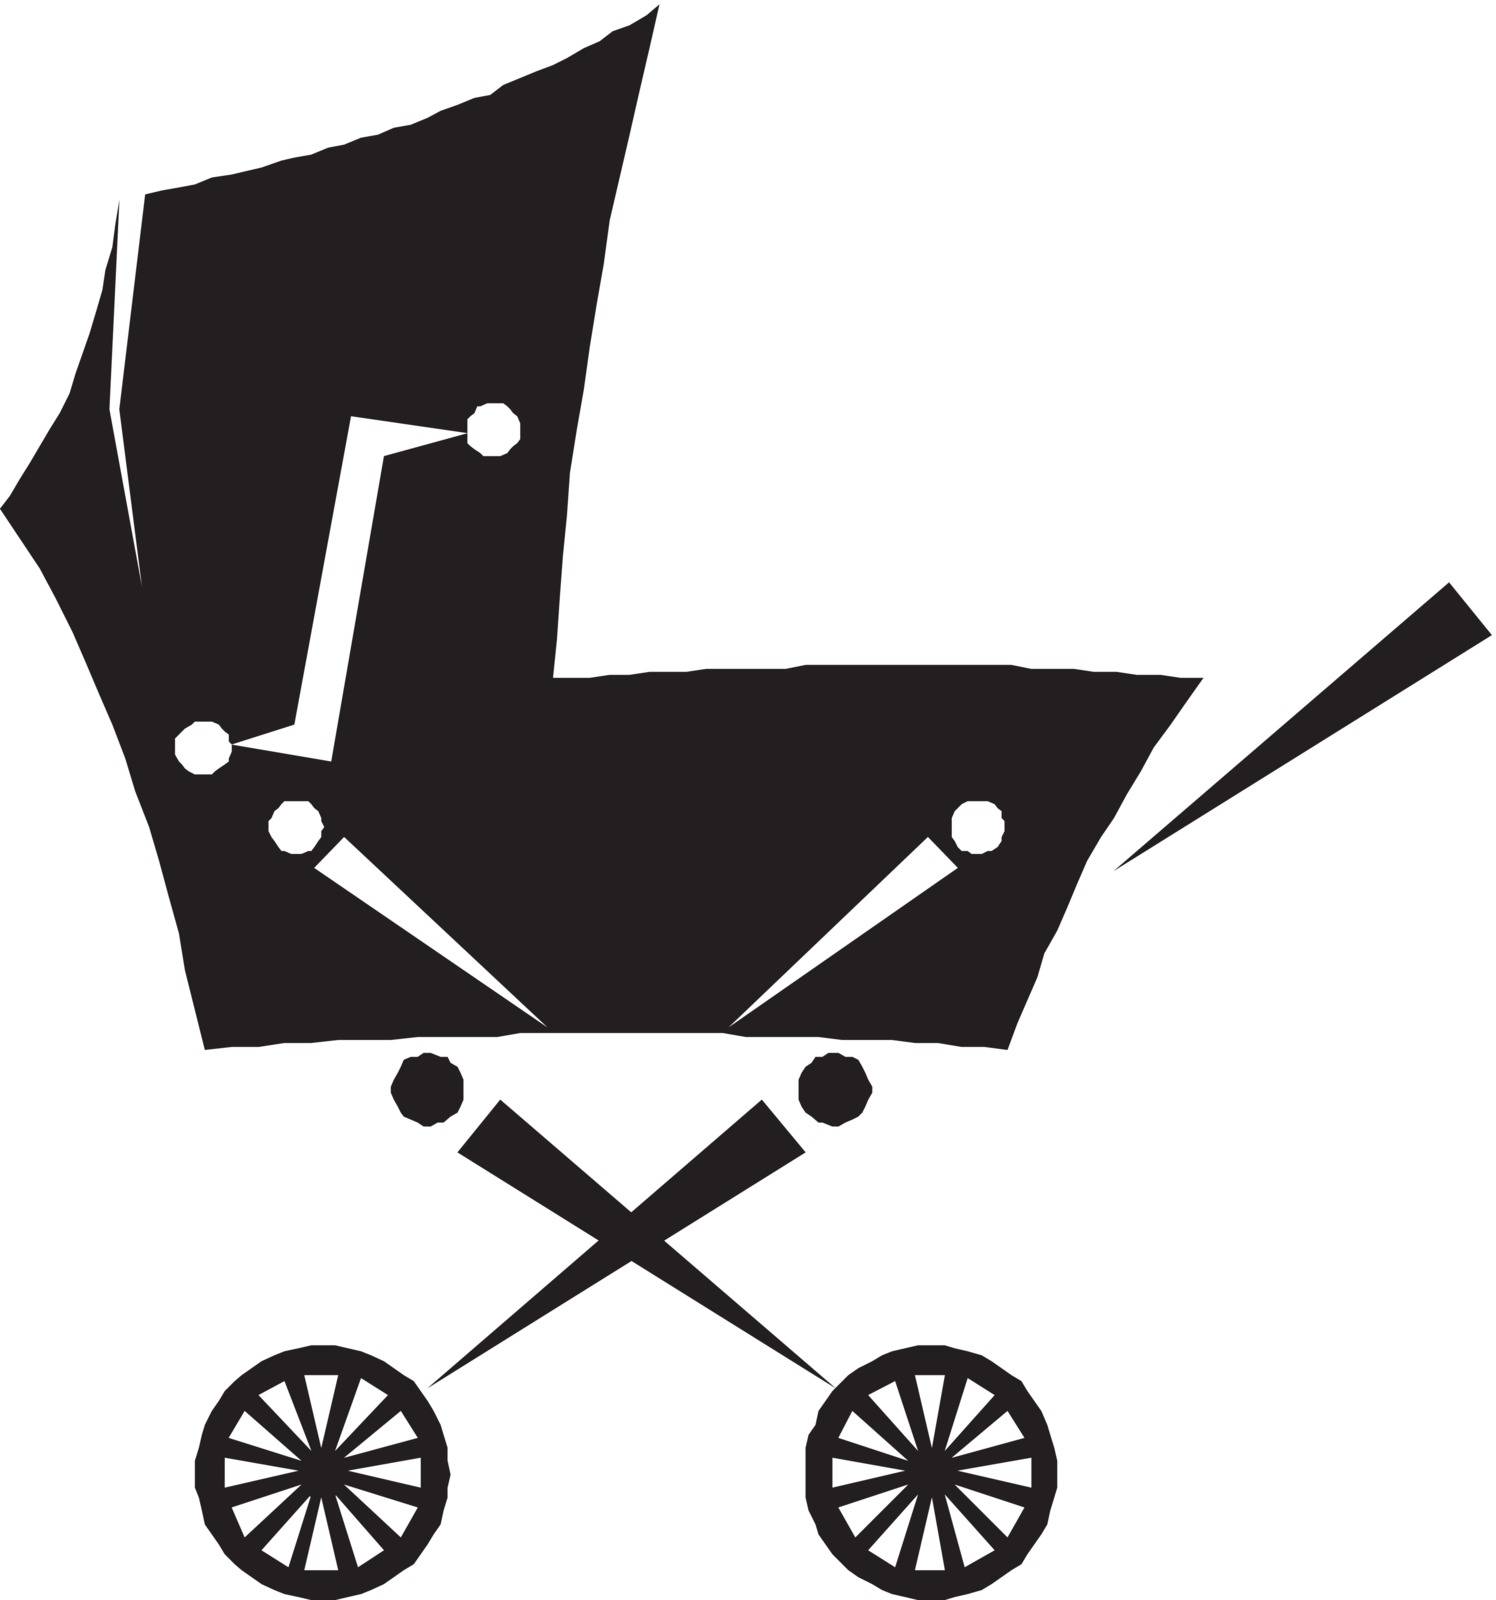 pram - baby carriage silhouette